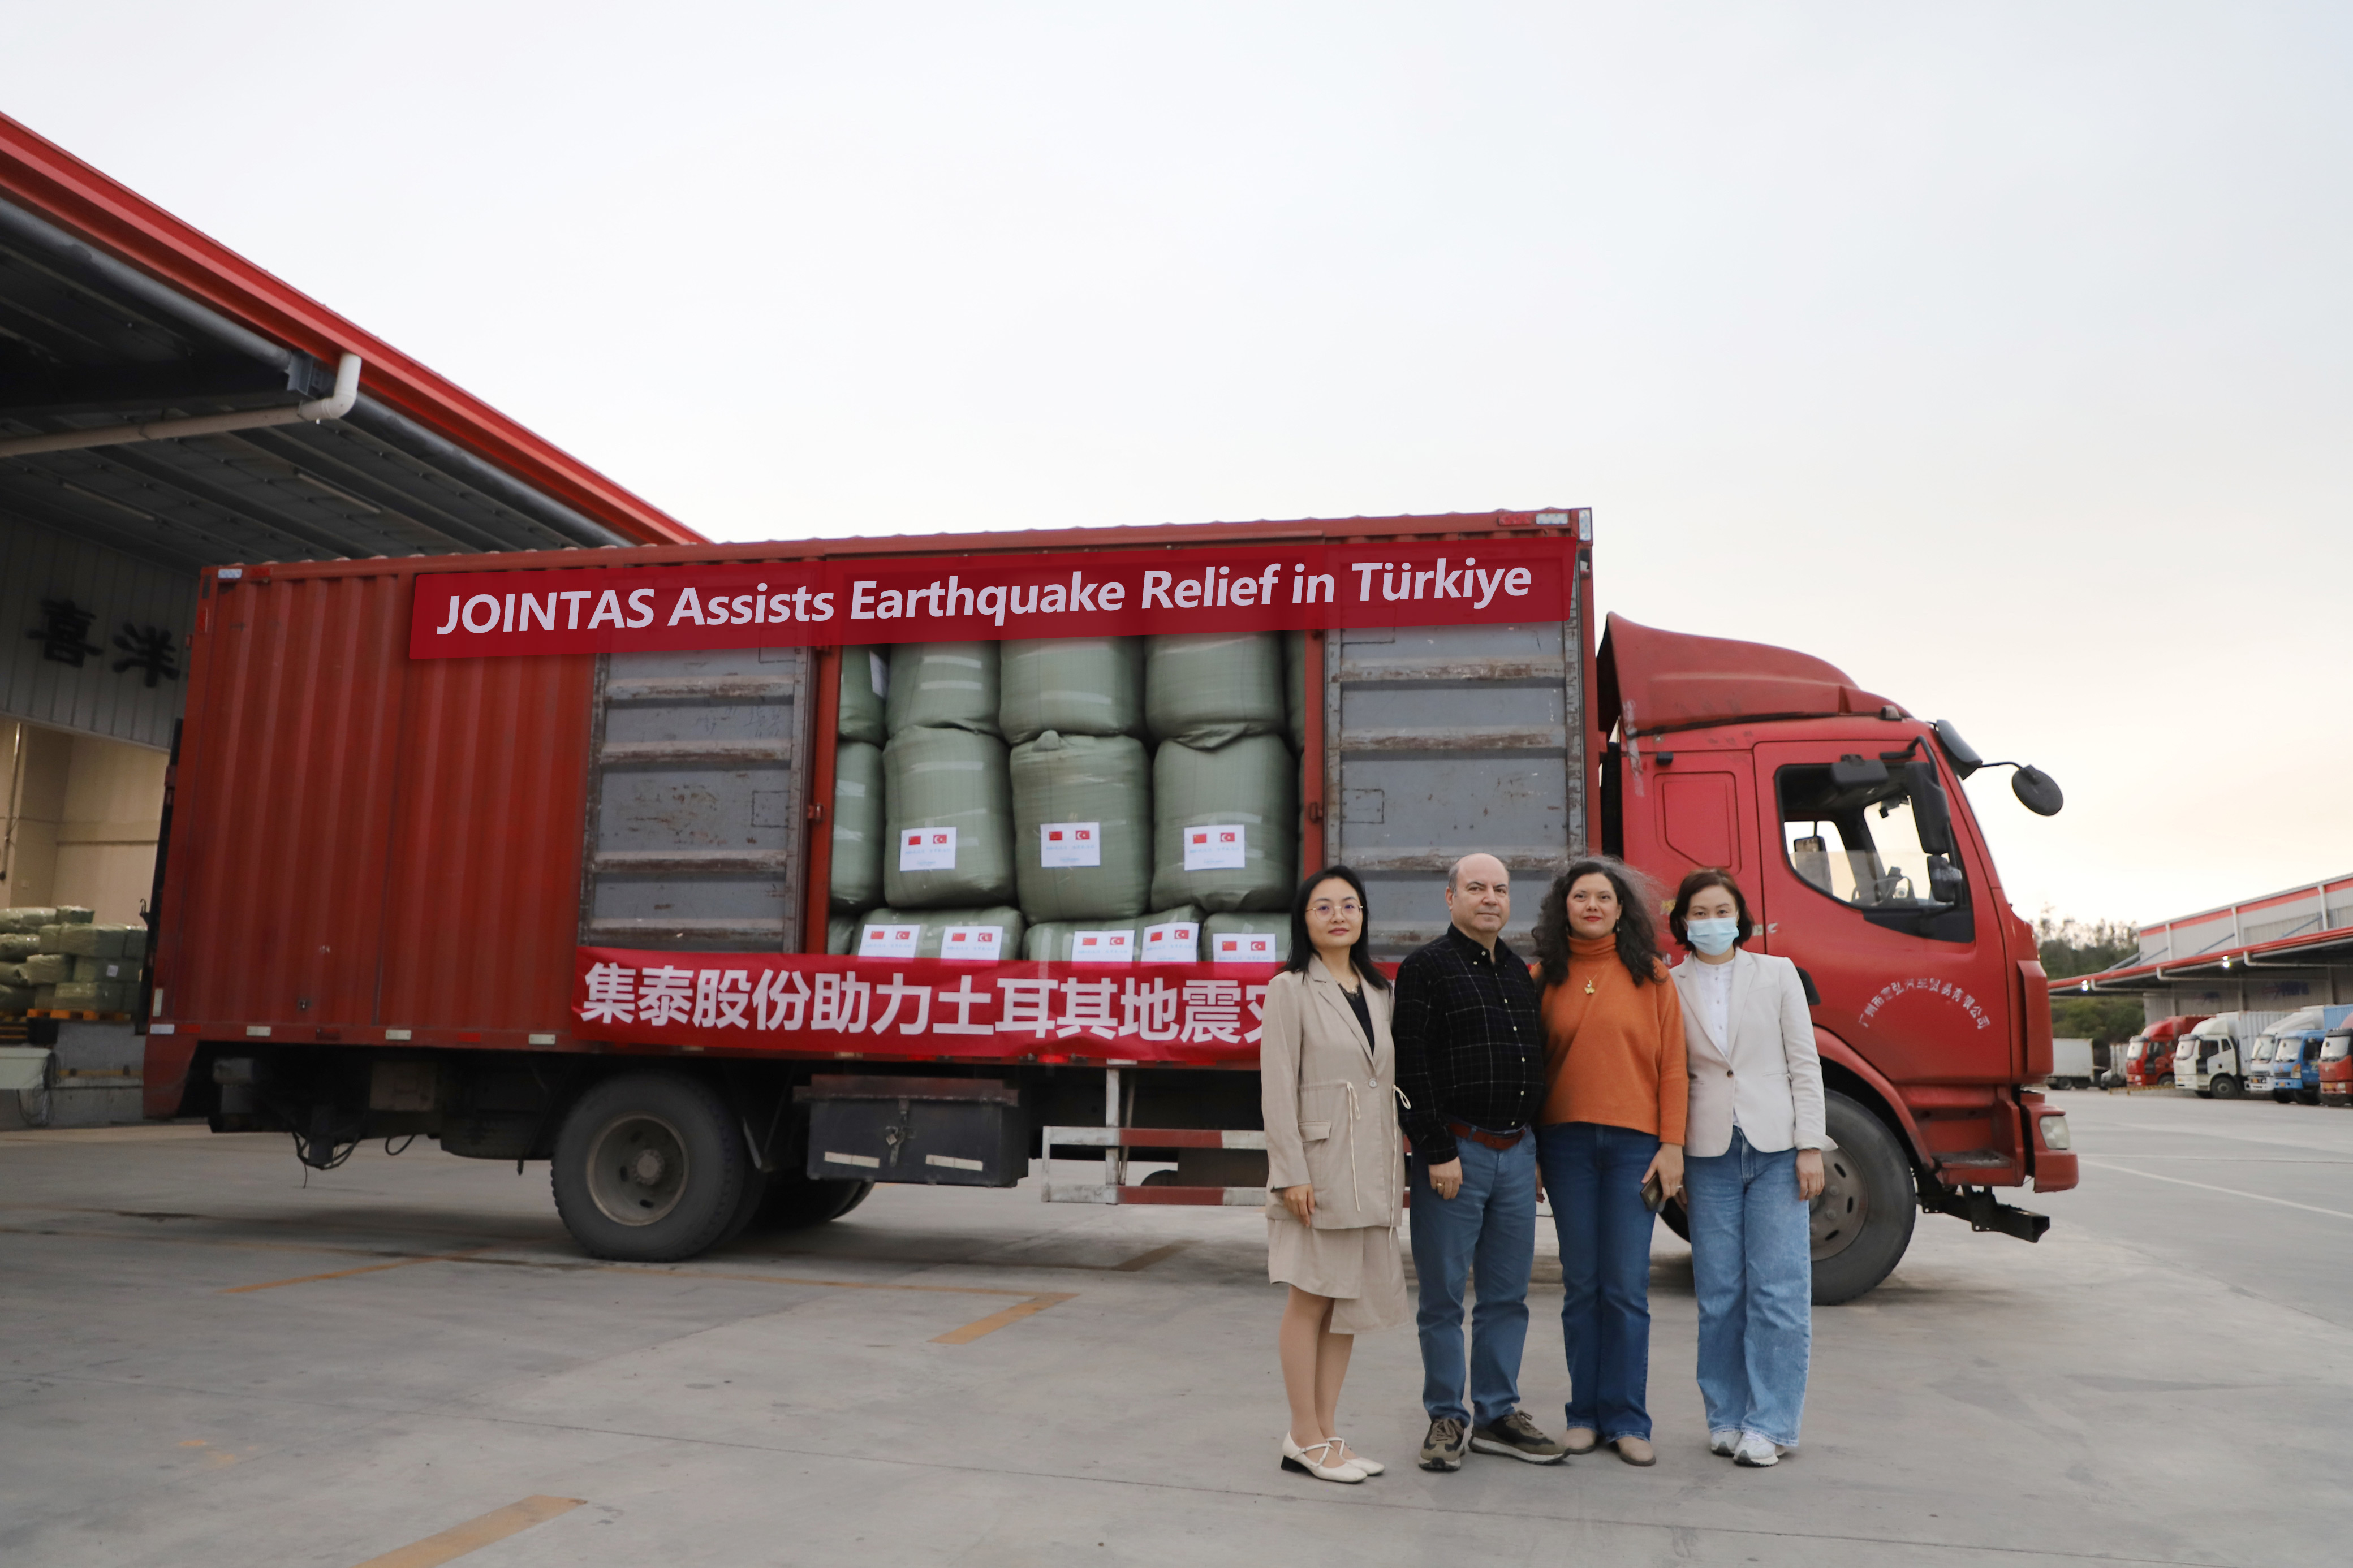 Juntos com a assistência mútua para um futuro compartilhado — JOINTAS fornece ajuda de emergência para a Turquia atingida pelo terremoto